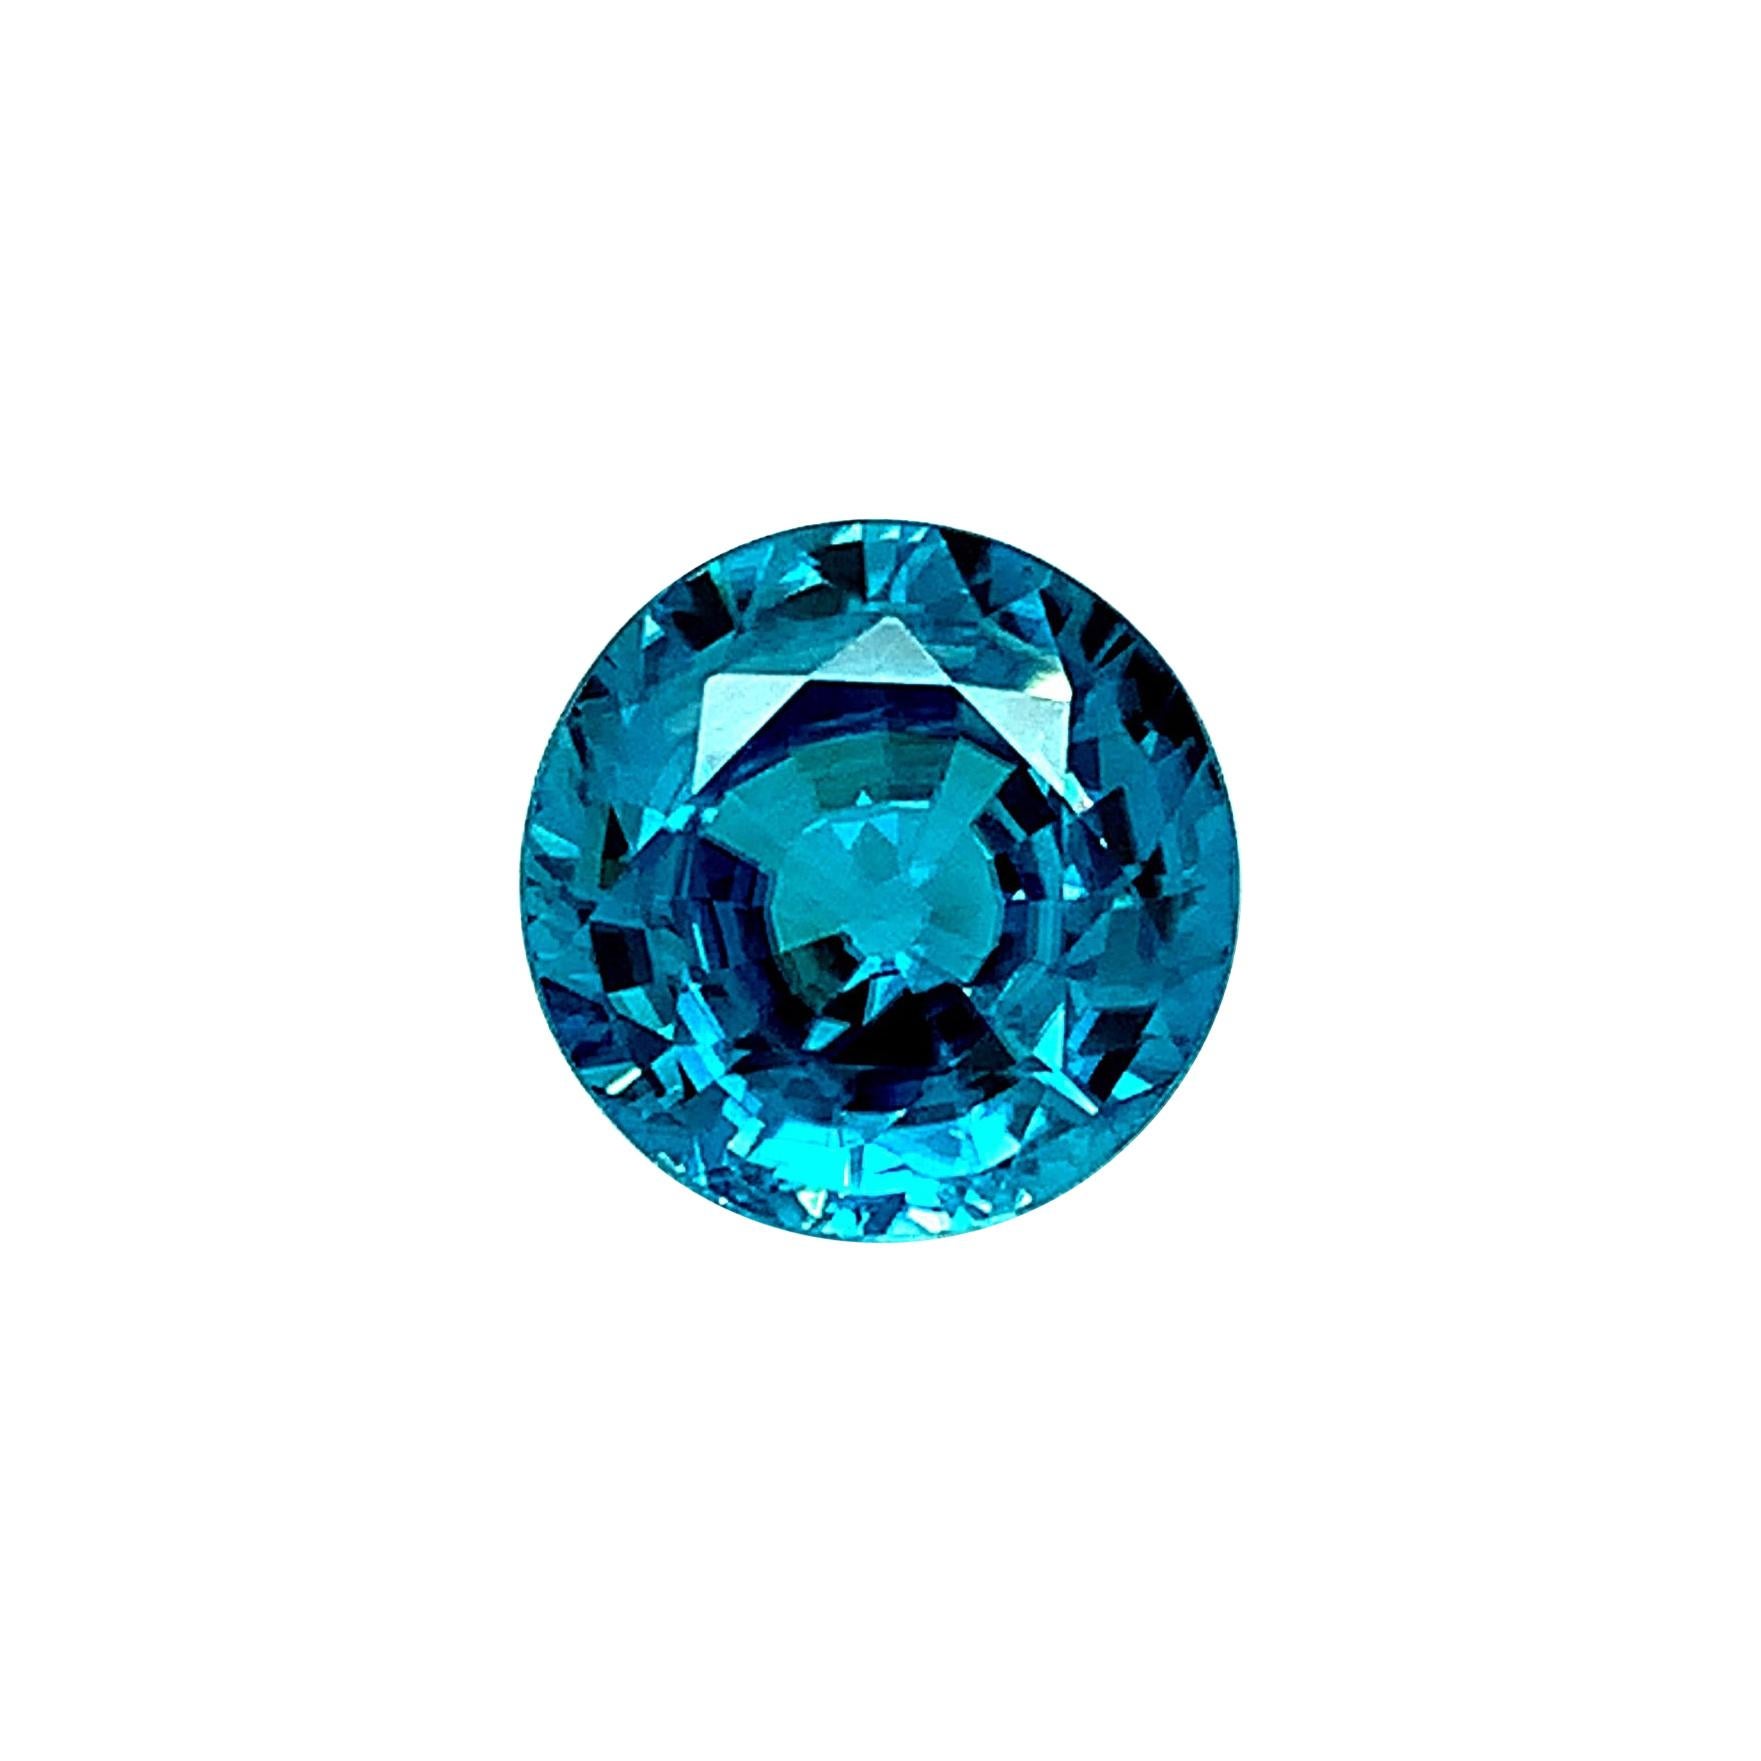 10.18 Carat Round Blue Zircon, Unset Loose Gemstone   For Sale